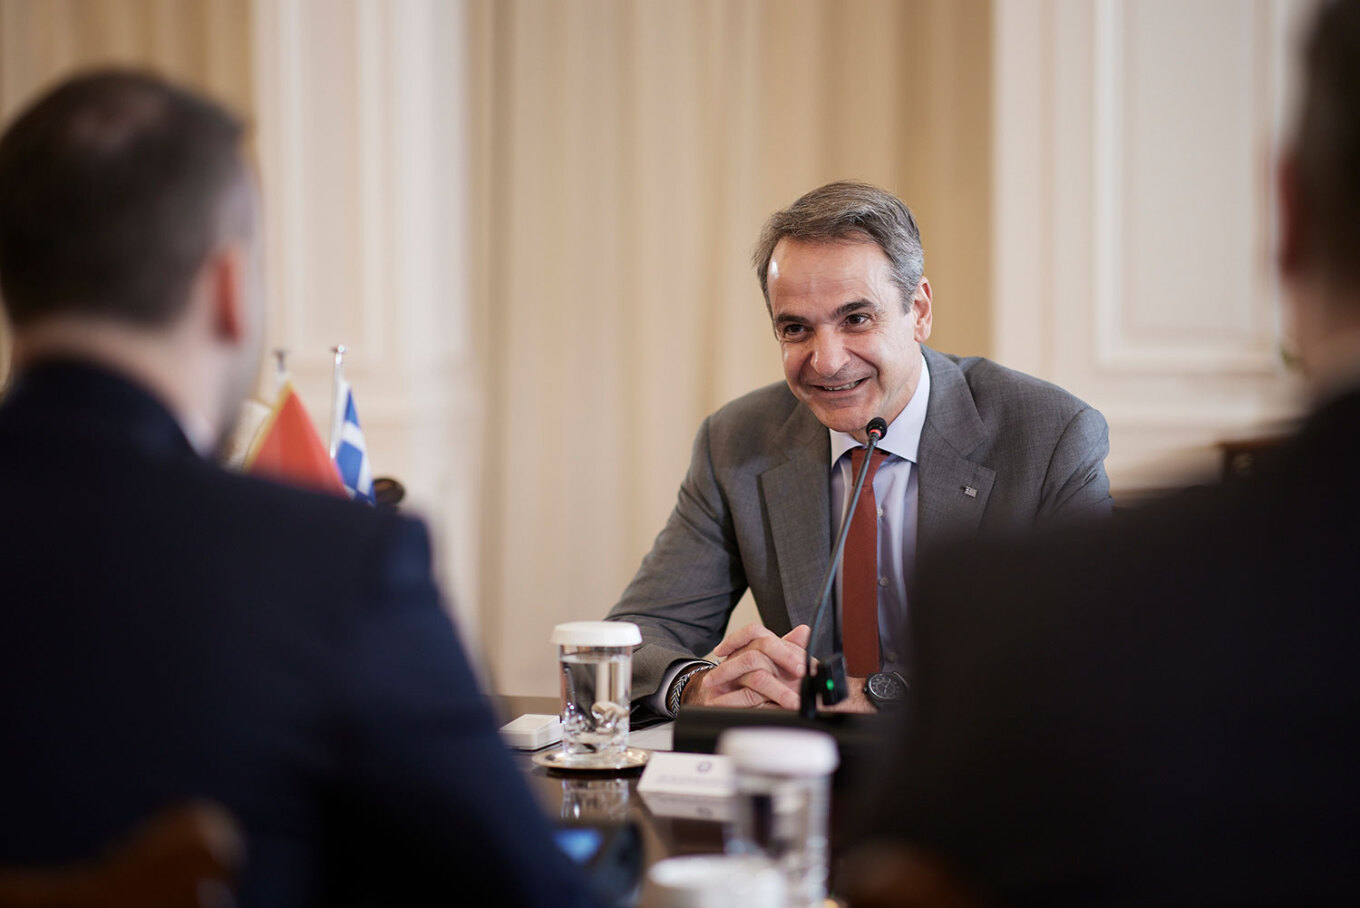 Τι συζήτησε ο Μητσοτάκης με τον Πρωθυπουργό του Μαυροβουνίου